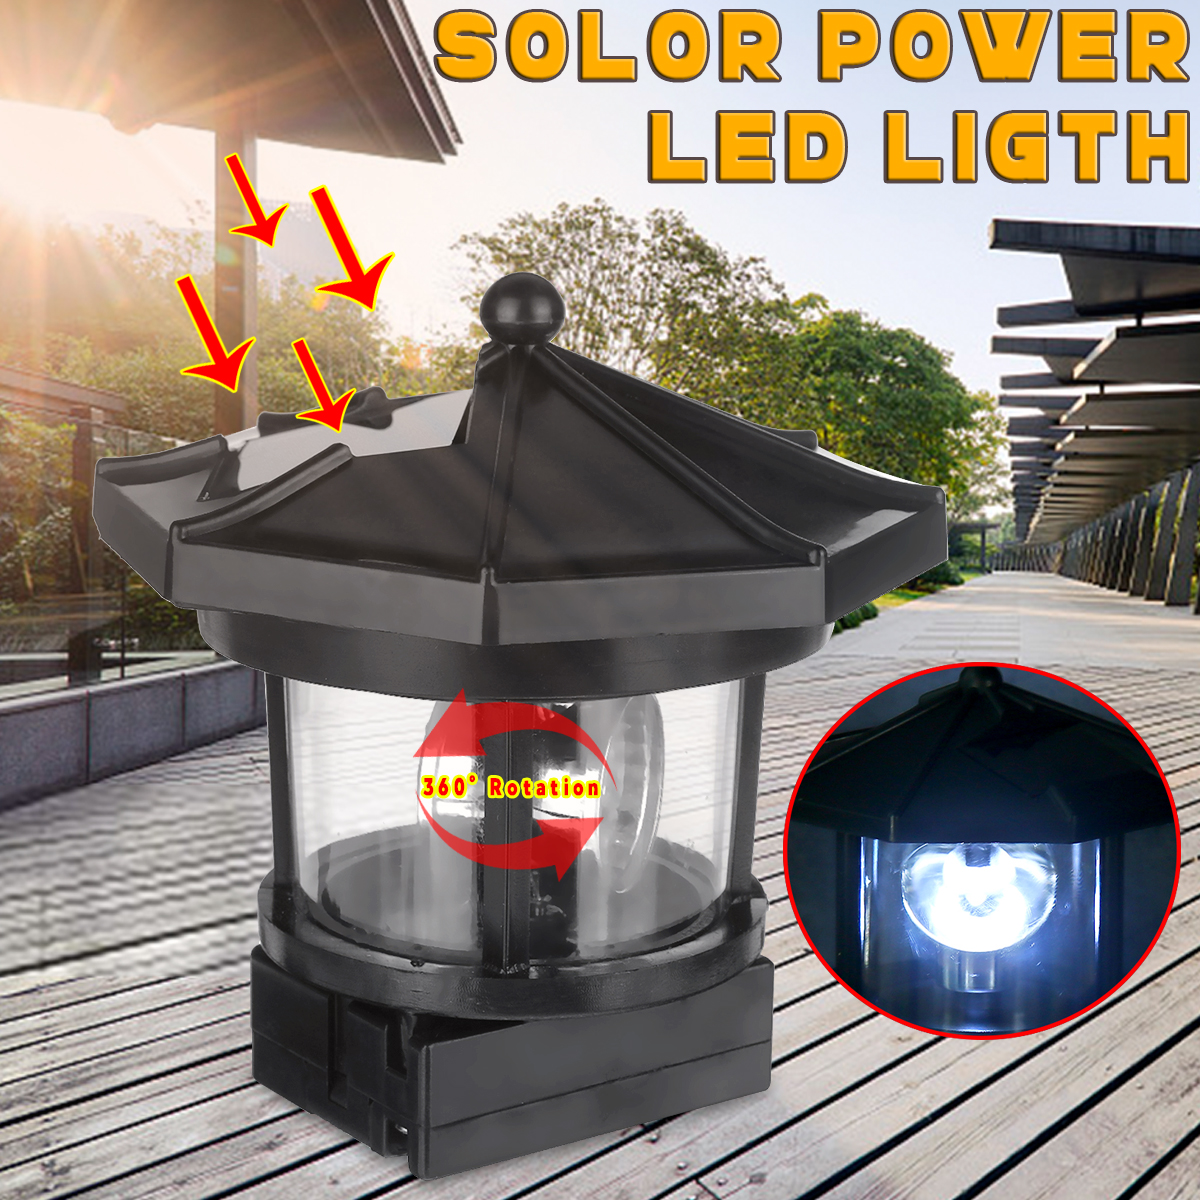 Solar-Powered-Lighthouse-LED-Rotating-Solar-Light-Outdoor-Garden-Lighting-Lamp-Decor-1567223-2